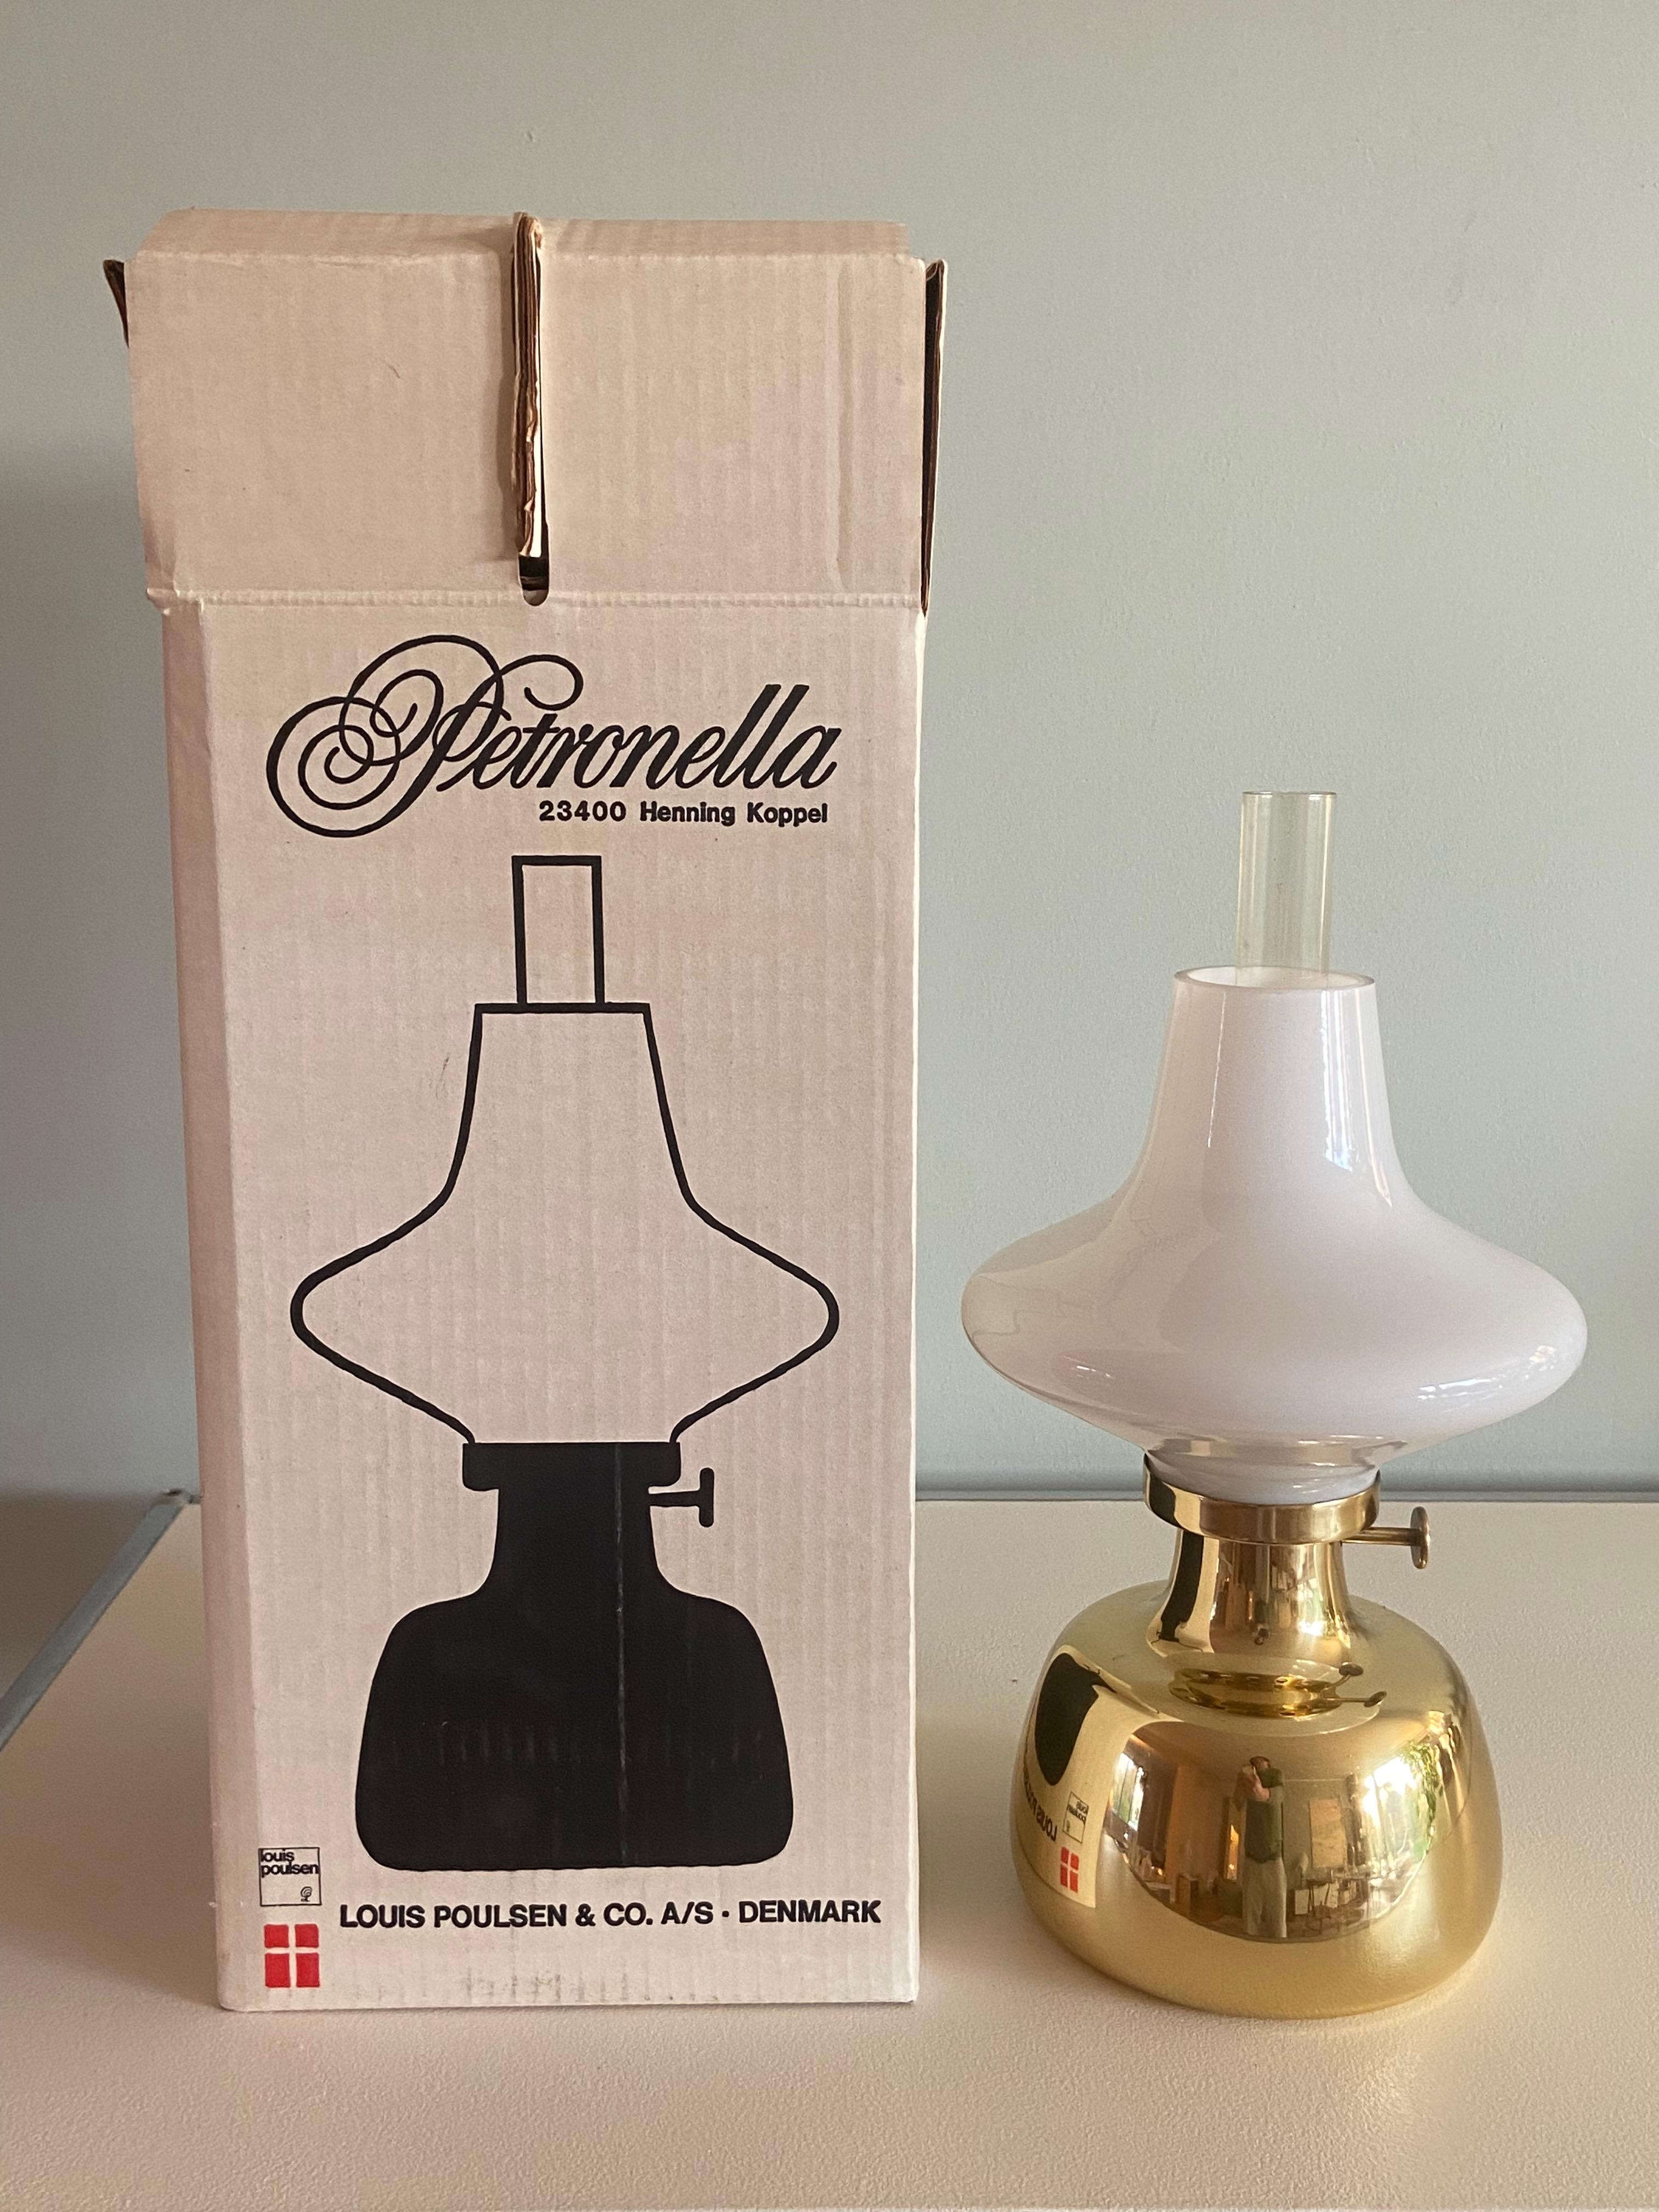 Henning Koppel Petronella Oil Lamp by Louis Poulsen, Denmark For Sale 2